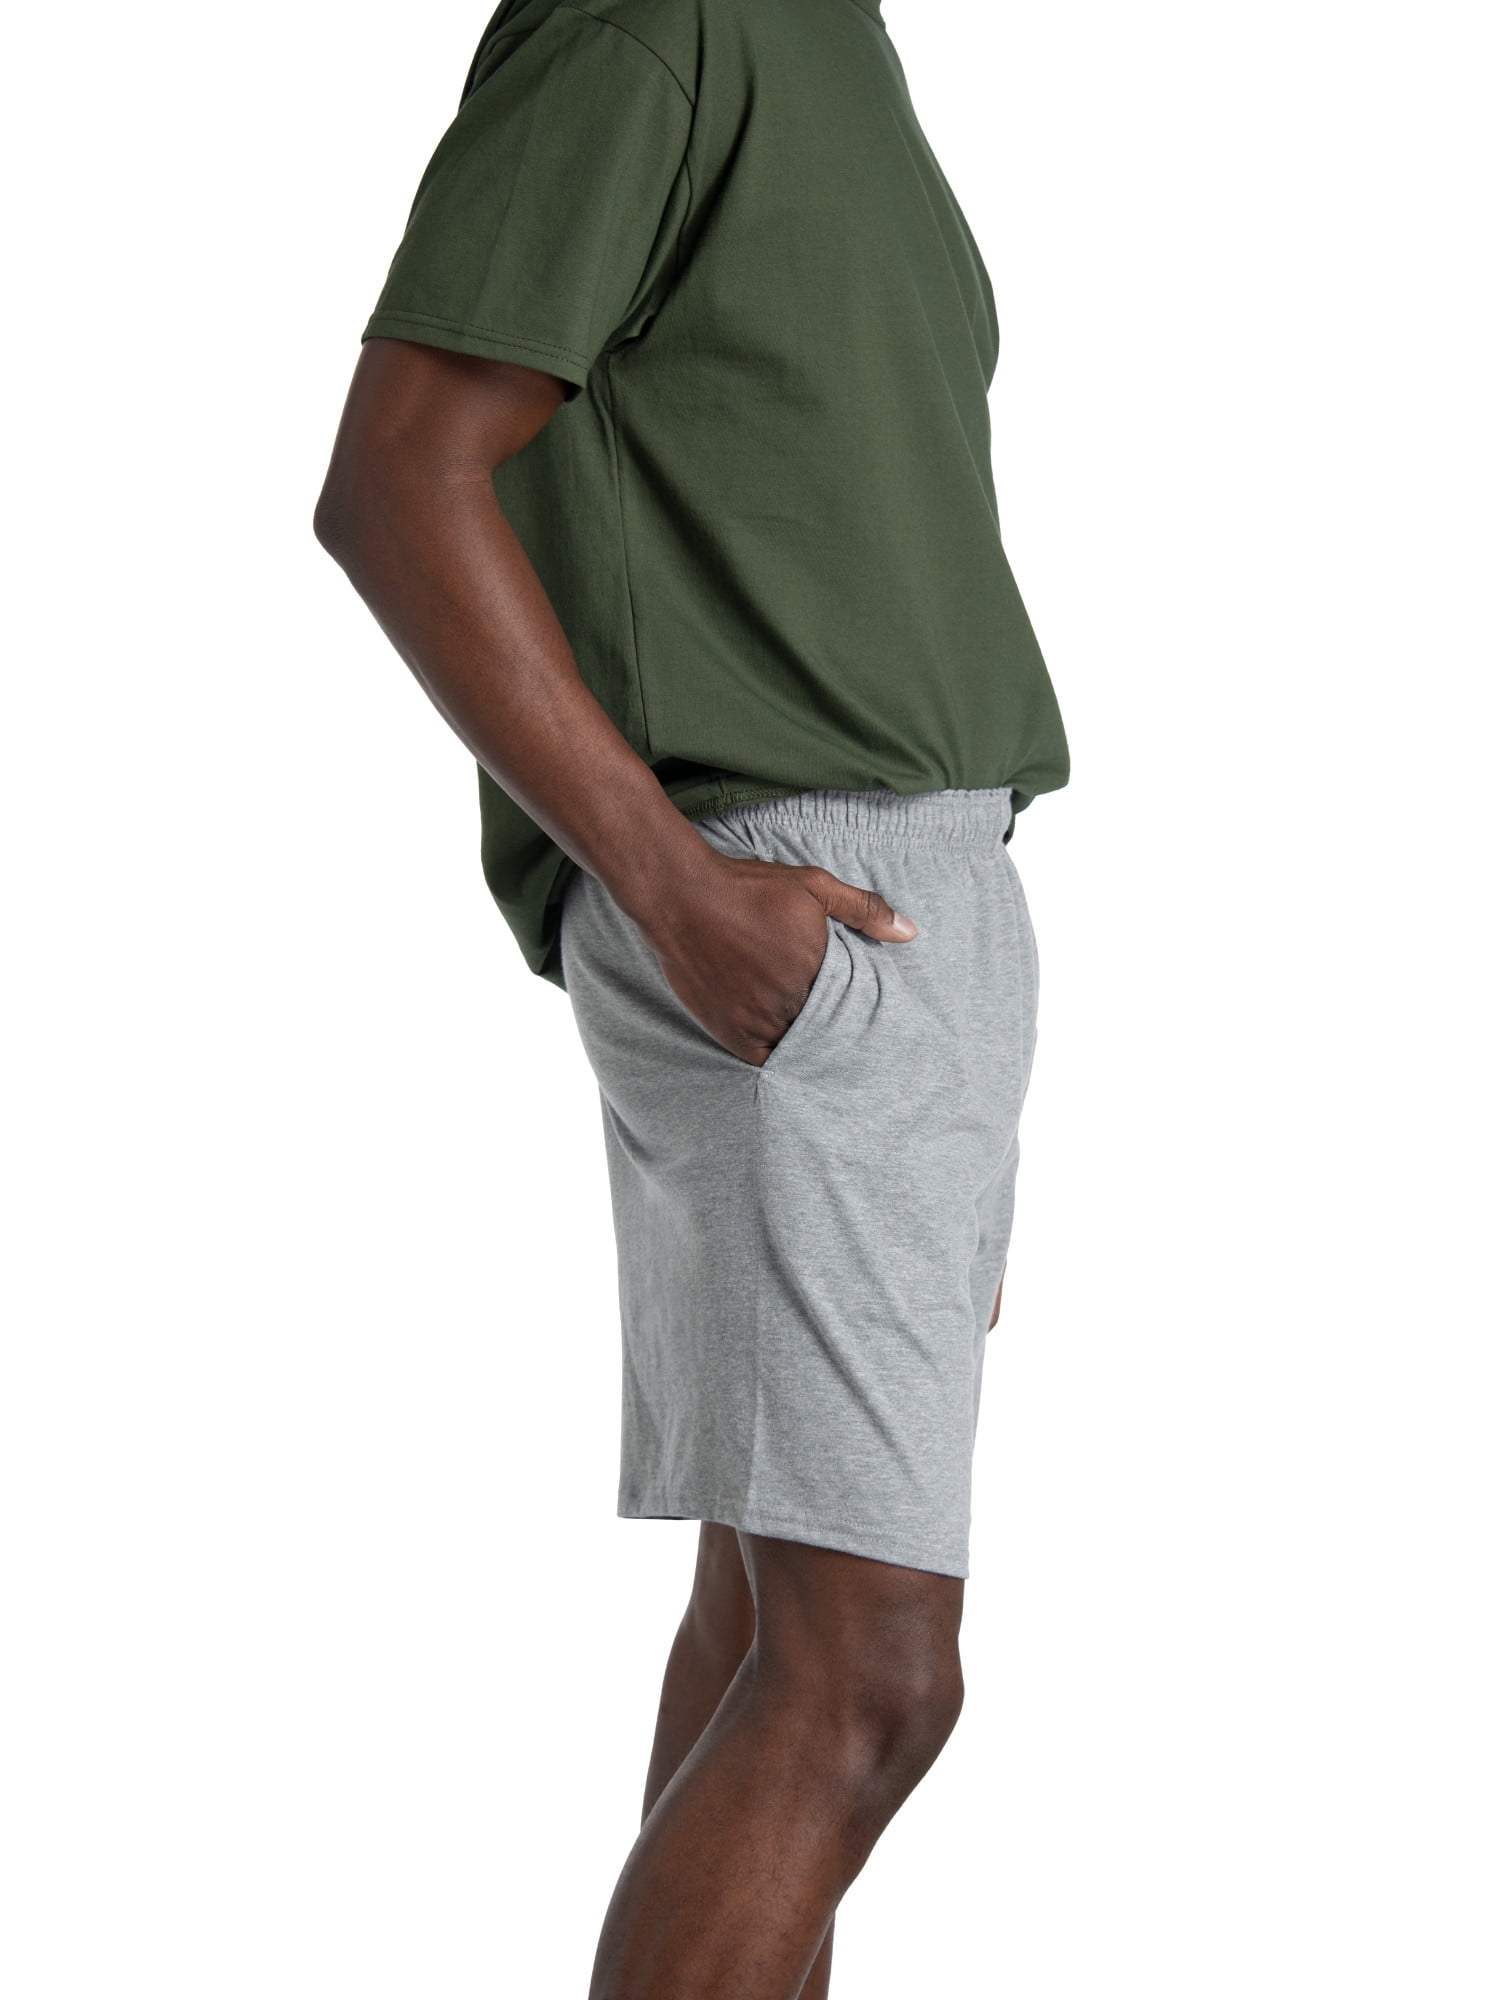 Pantaloncini LOUIS VUITTON, taglia: 36. Modello color pe…